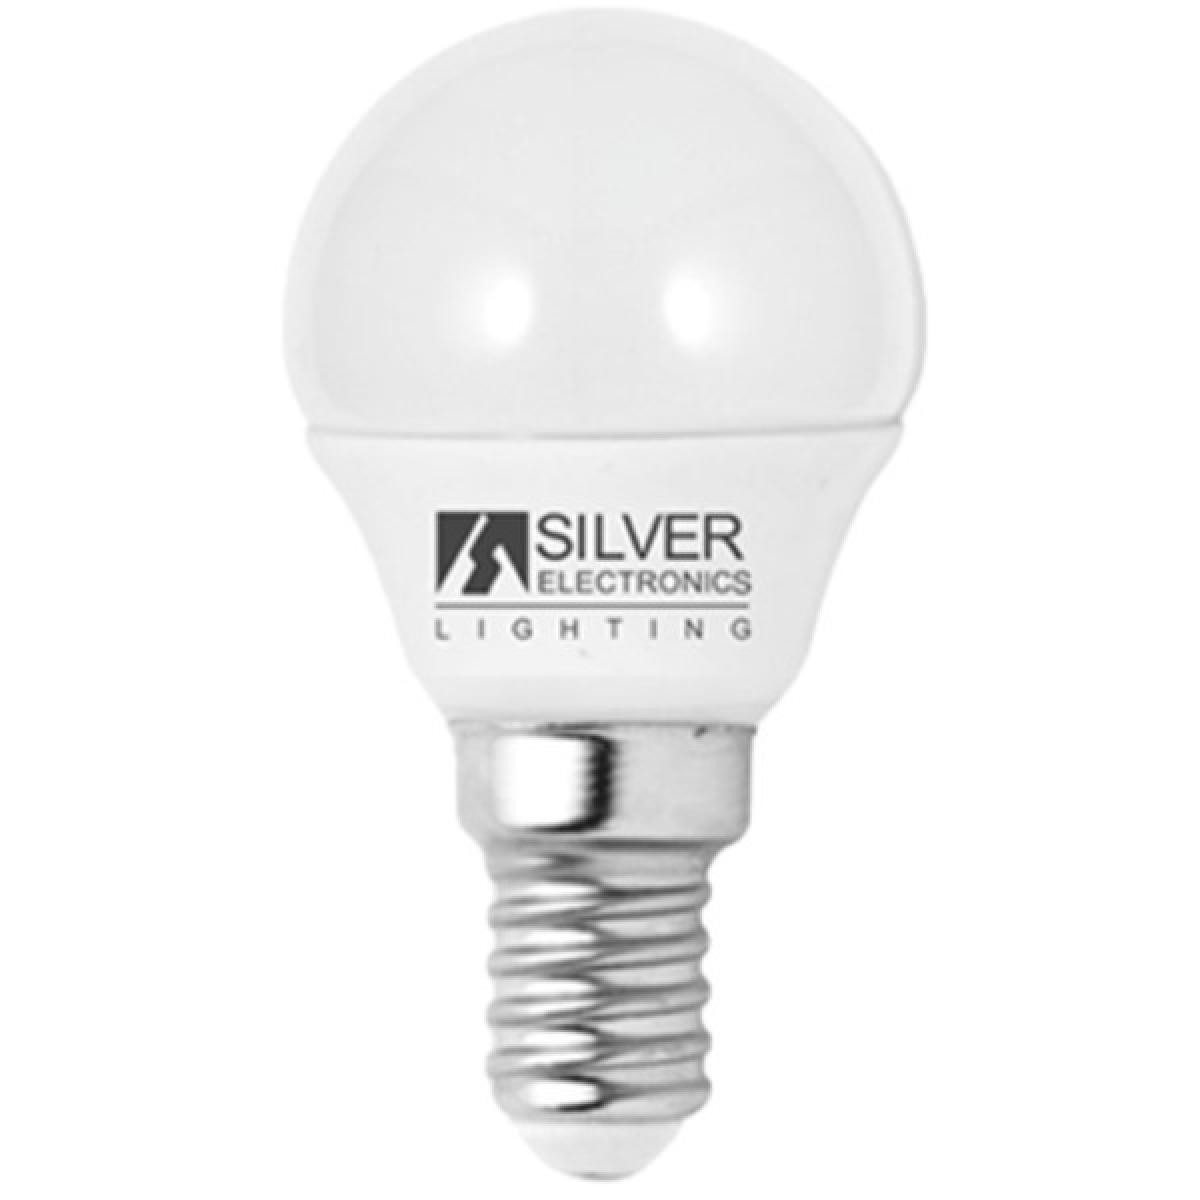 Totalcadeau - Ampoule LED sphérique Eco E14 436 lm 5W Lumière blanche Choisissez votre option - 6000K pas cher - Ampoules LED